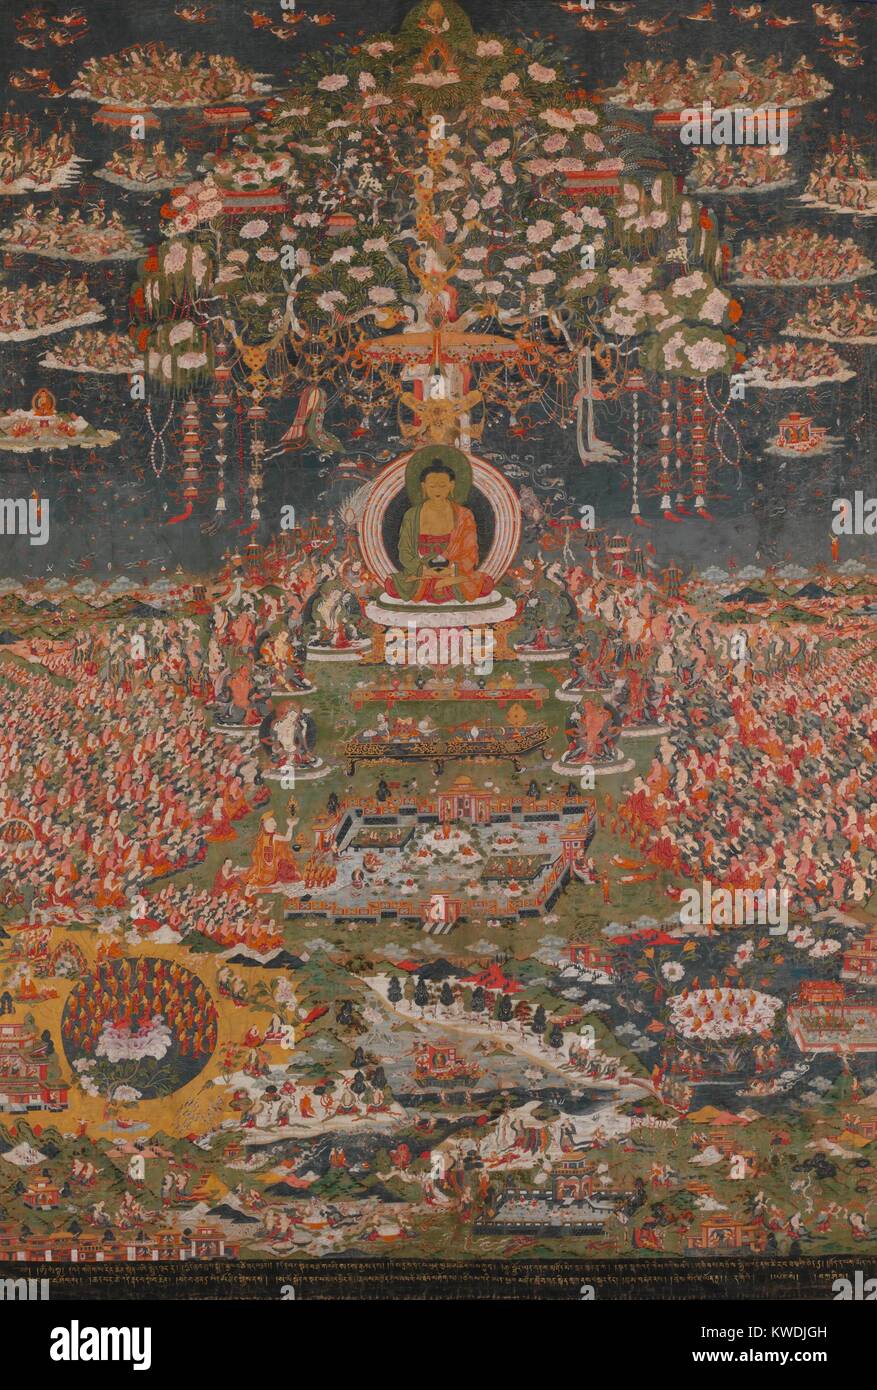 AMITABHA, le BOUDDHA DE L'OUEST DE LA TERRE PURE, tibétaine, bouddhiste, xviiie s., la peinture. Amitayus, le Bouddha de la vie éternelle, dans son paradis, Sukhavati, la terre pure de l'Ouest. Le ciel est rempli de demi-dieux qui dispersent les fleurs. Juste en dessous sont les Amitayus huit grands bodhisattvas. En bas sont des pools de paysage à partir de laquelle le BSLOC purifiée renaissent (   2017 16 13) Banque D'Images